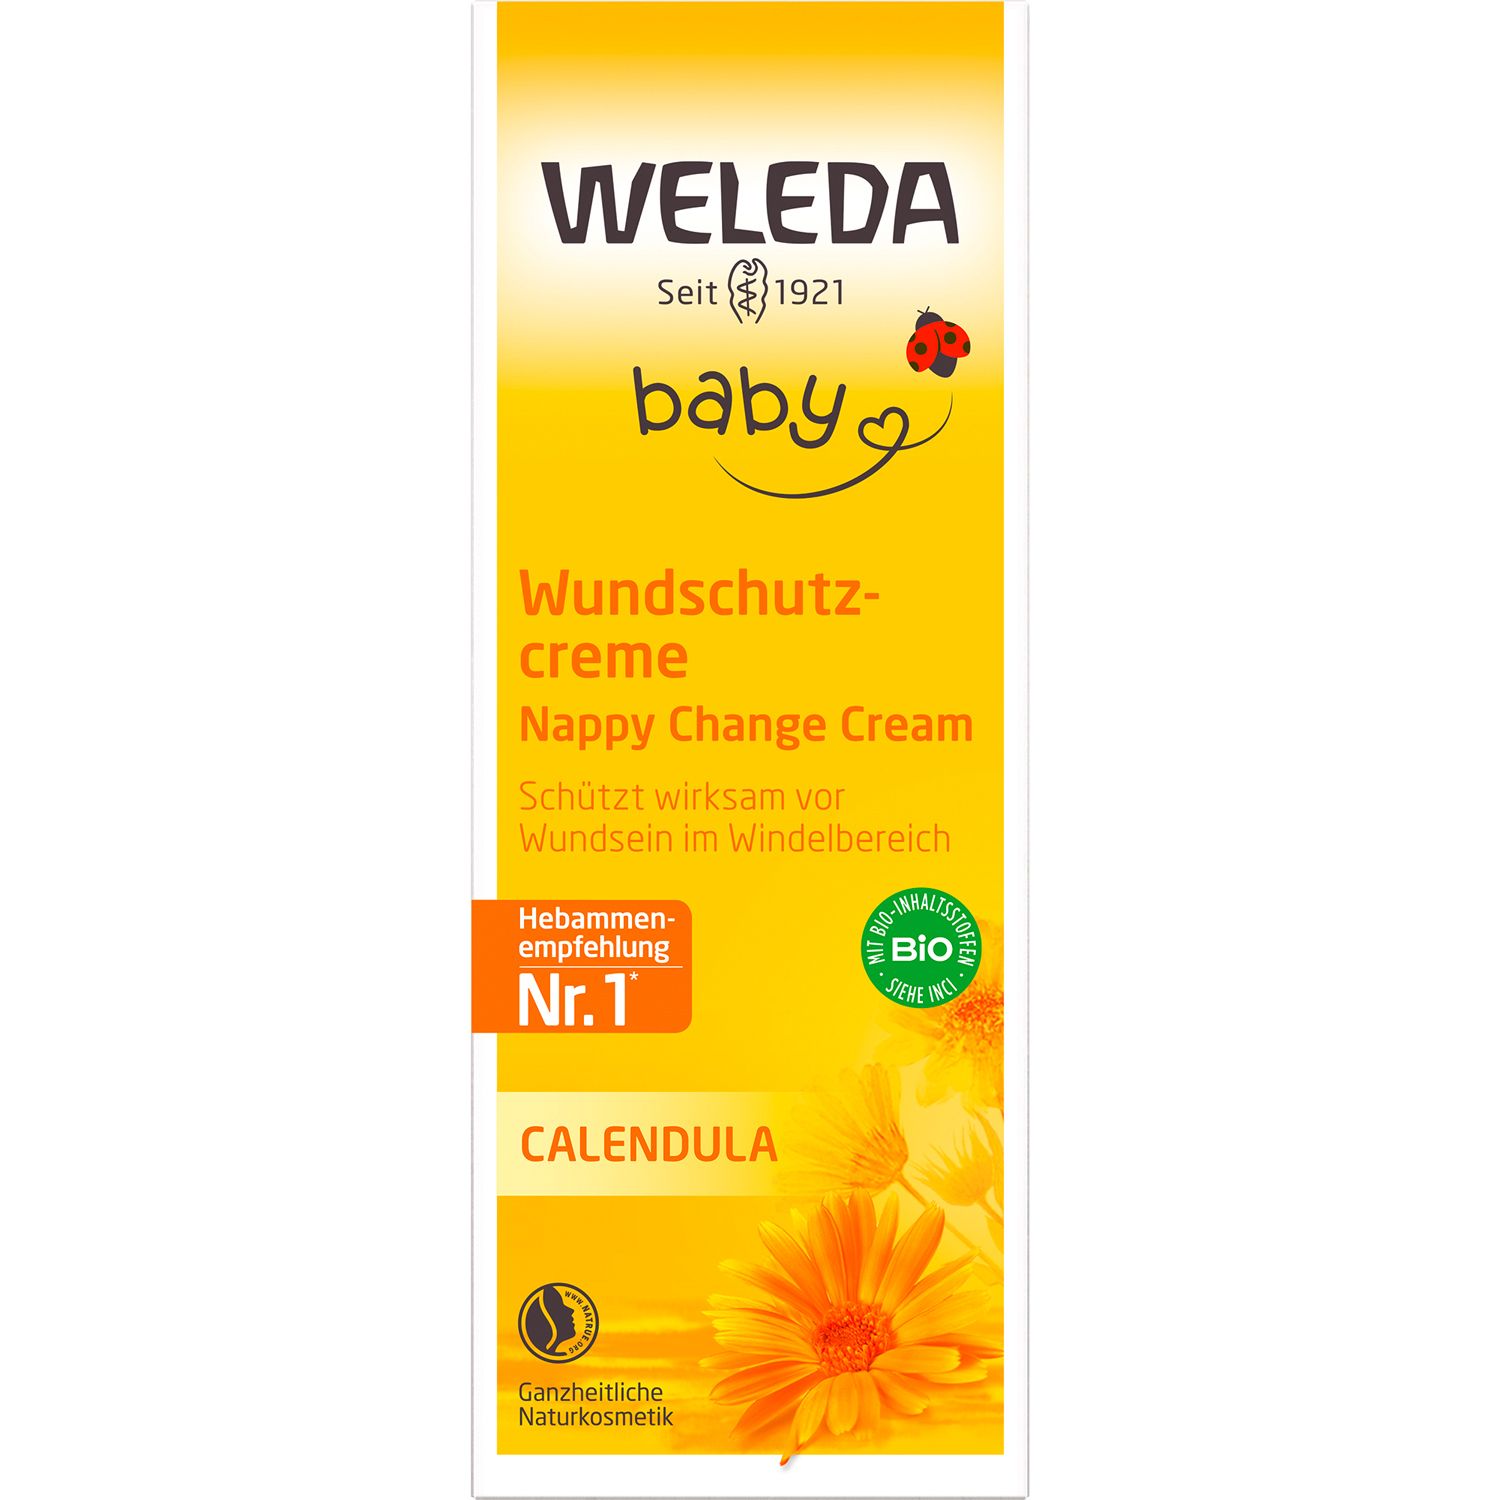 Weleda Baby Wundschutzcreme Calendula  - pflegt & schützt Babyhaut vor Wundsein im Windelbereich